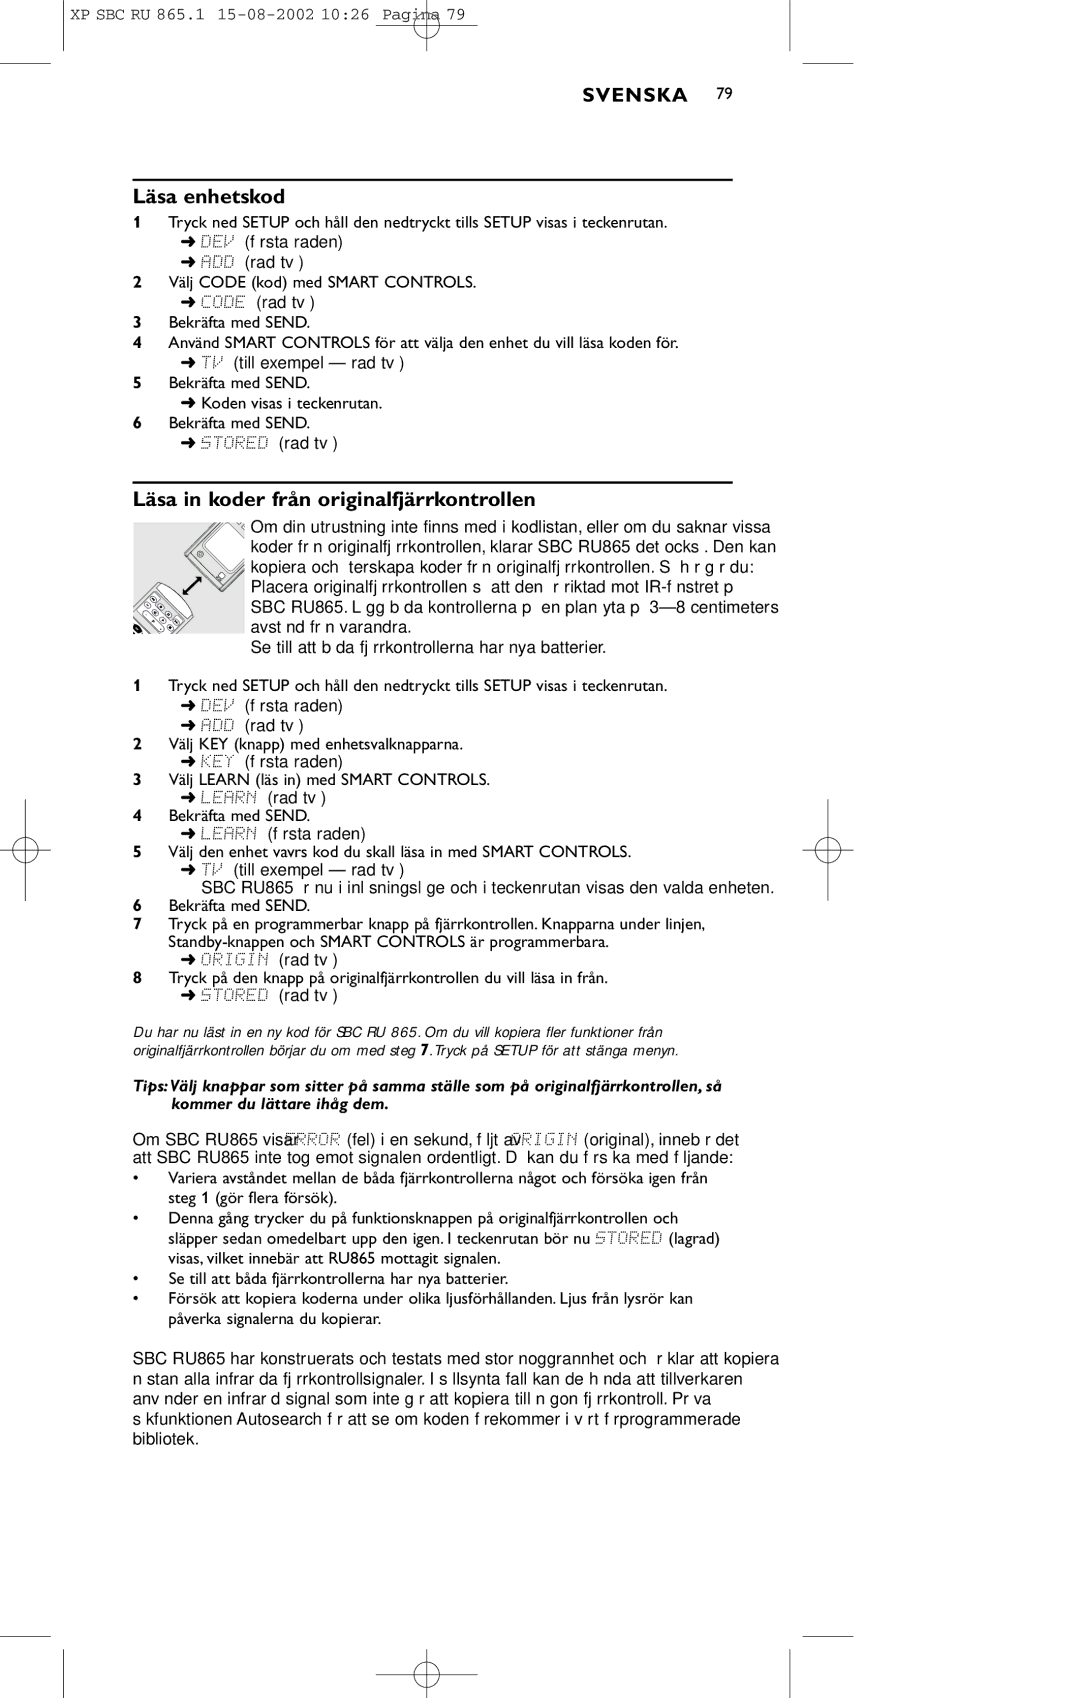 Philips SBC RU 865/00 manual Läsa enhetskod, Läsa in koder från originalfjärrkontrollen 